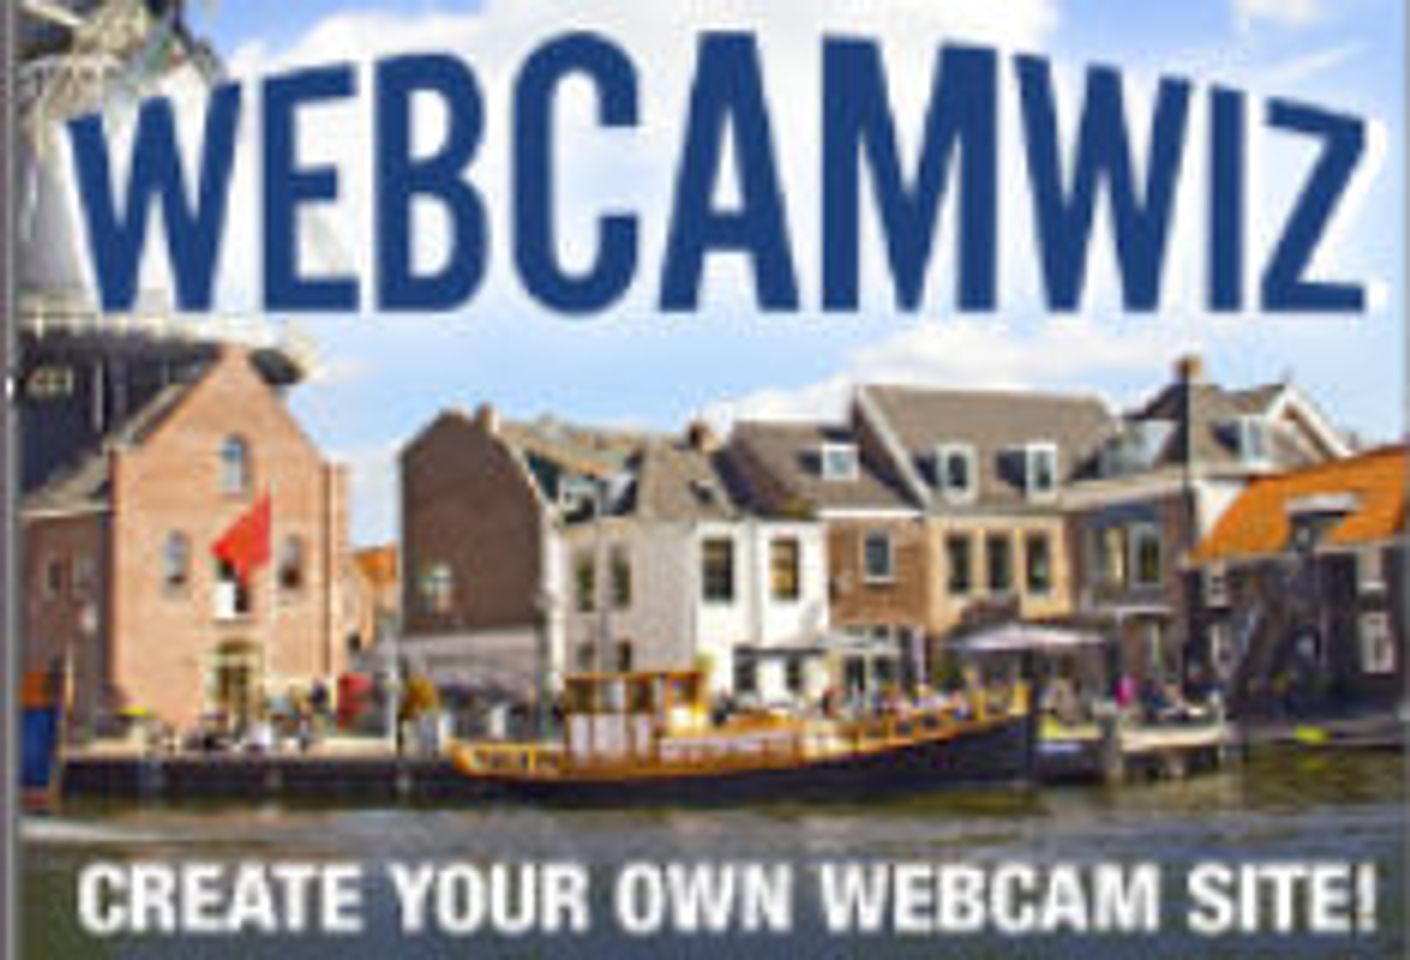 WebcamWiz Offering PPS Payout Bonus To Revshare Affiliates